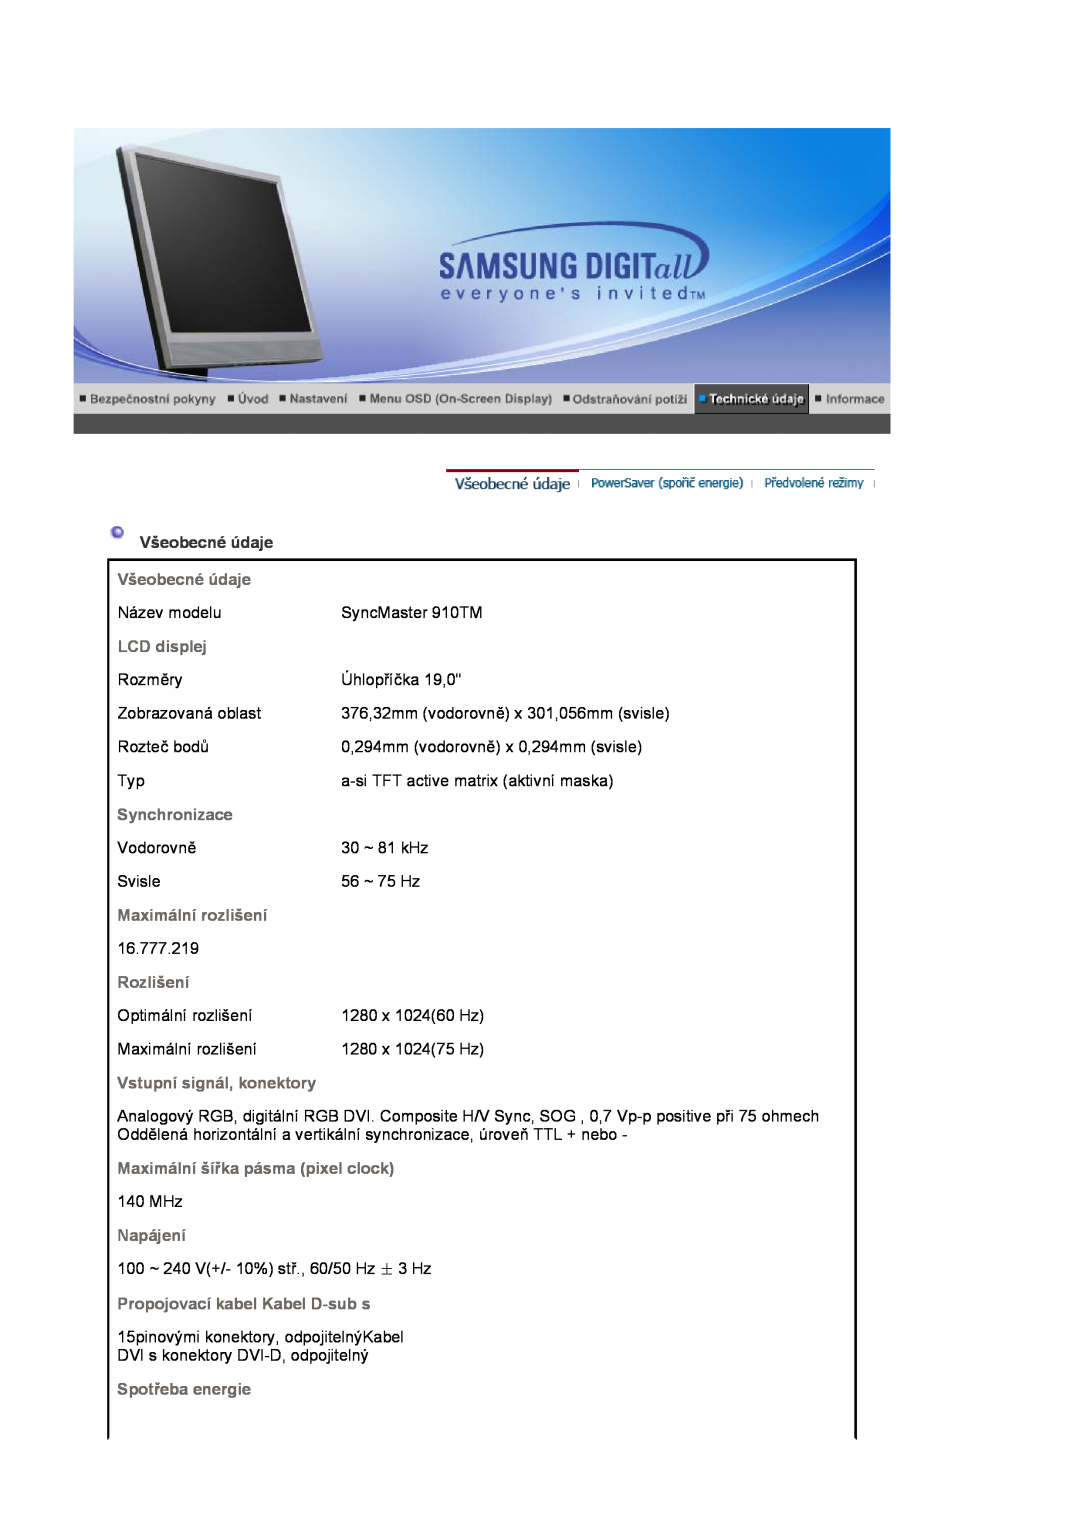 Samsung LS17MJSTSE/EDC, LS19MJSTS7/EDC, LS17MJSKSZ/EDC manual Všeobecné údaje, 376,32mm vodorovně x 301,056mm svisle 